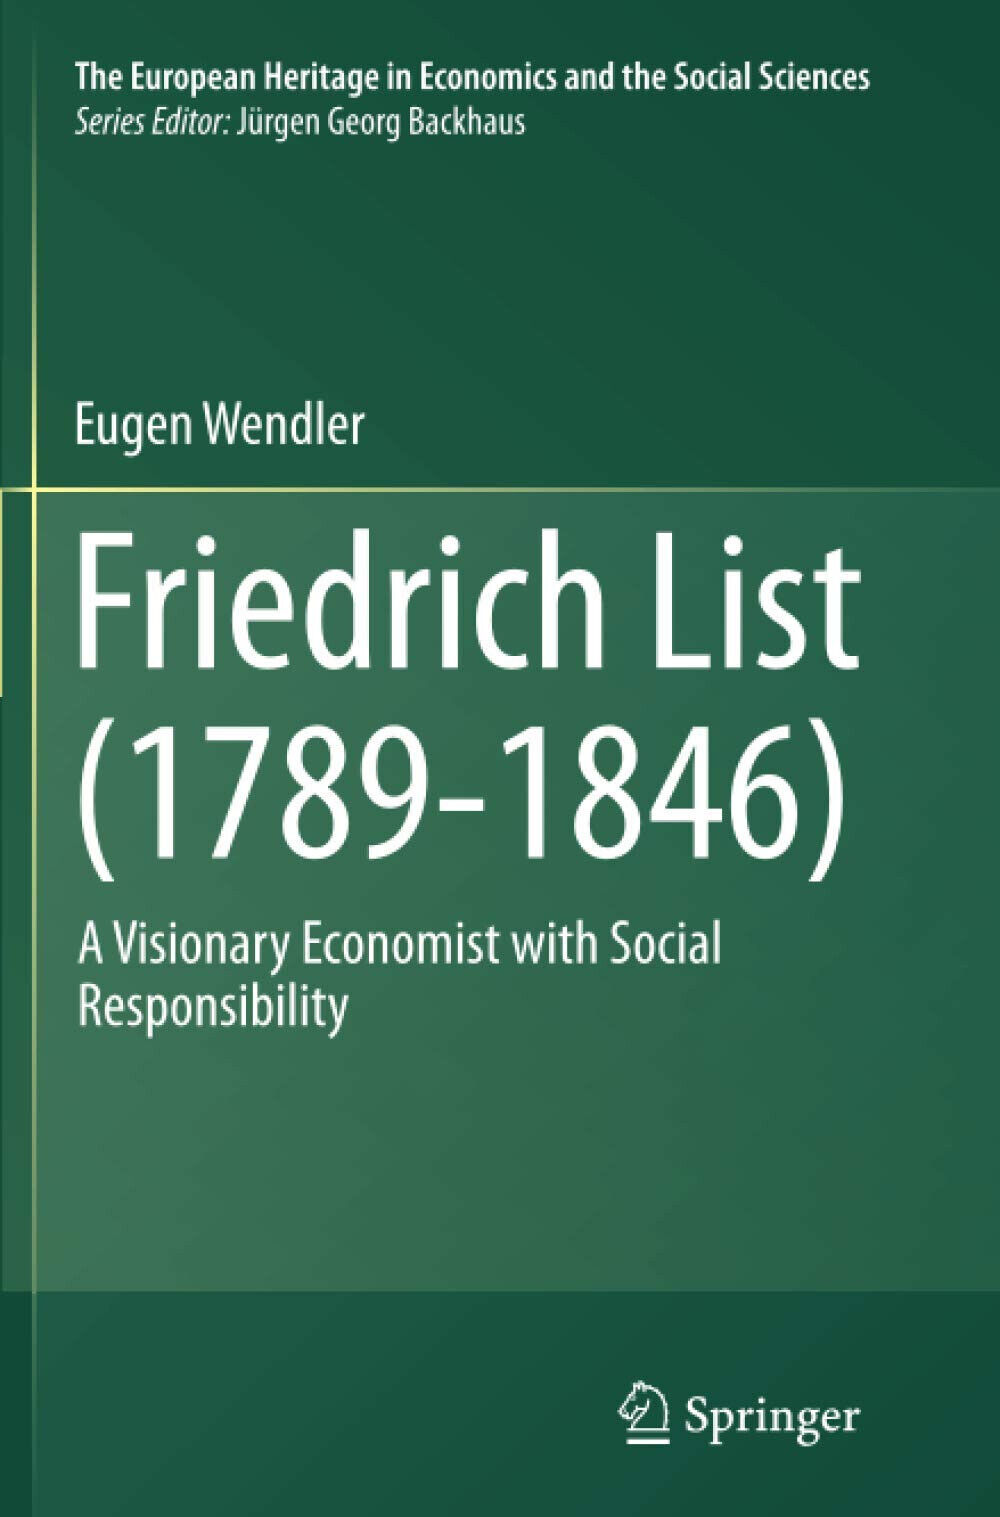 Friedrich List (1789-1846) - Eugen Wendler - Springer, 2016